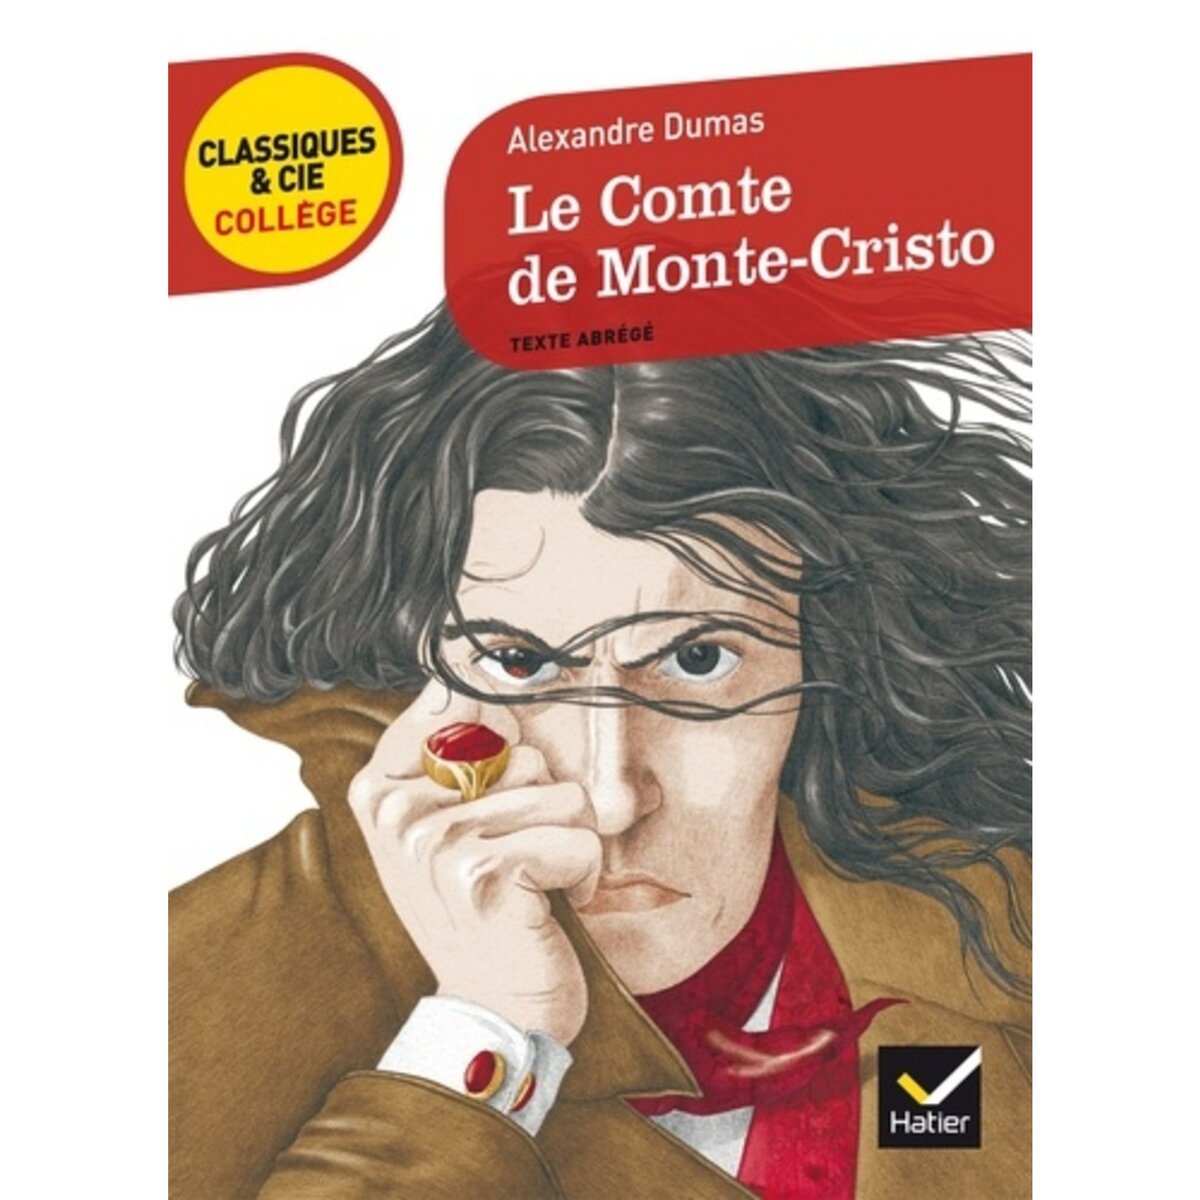  LE COMTE DE MONTE-CRISTO. TEXTE ABREGE, Dumas Alexandre